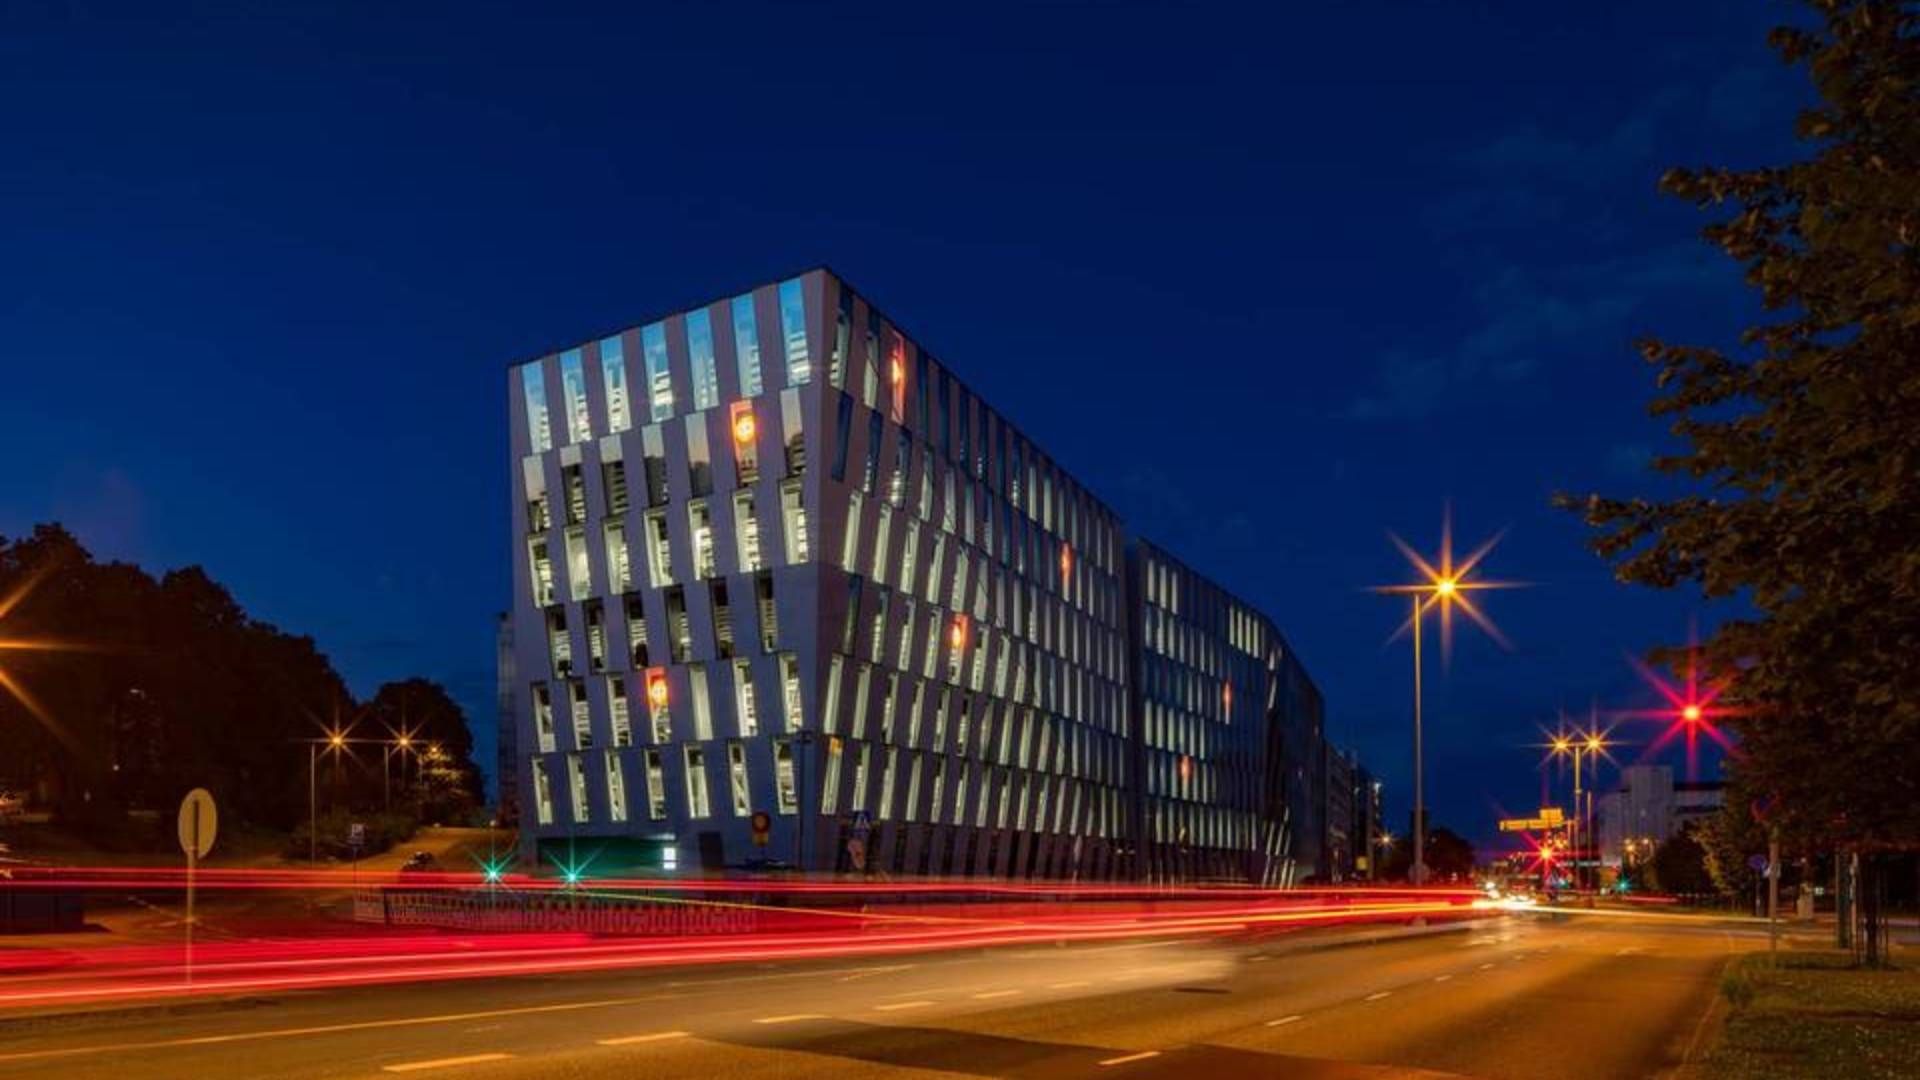 OP Financial Group's headquarters in Helsinki, Finland. | Photo: PR / OP